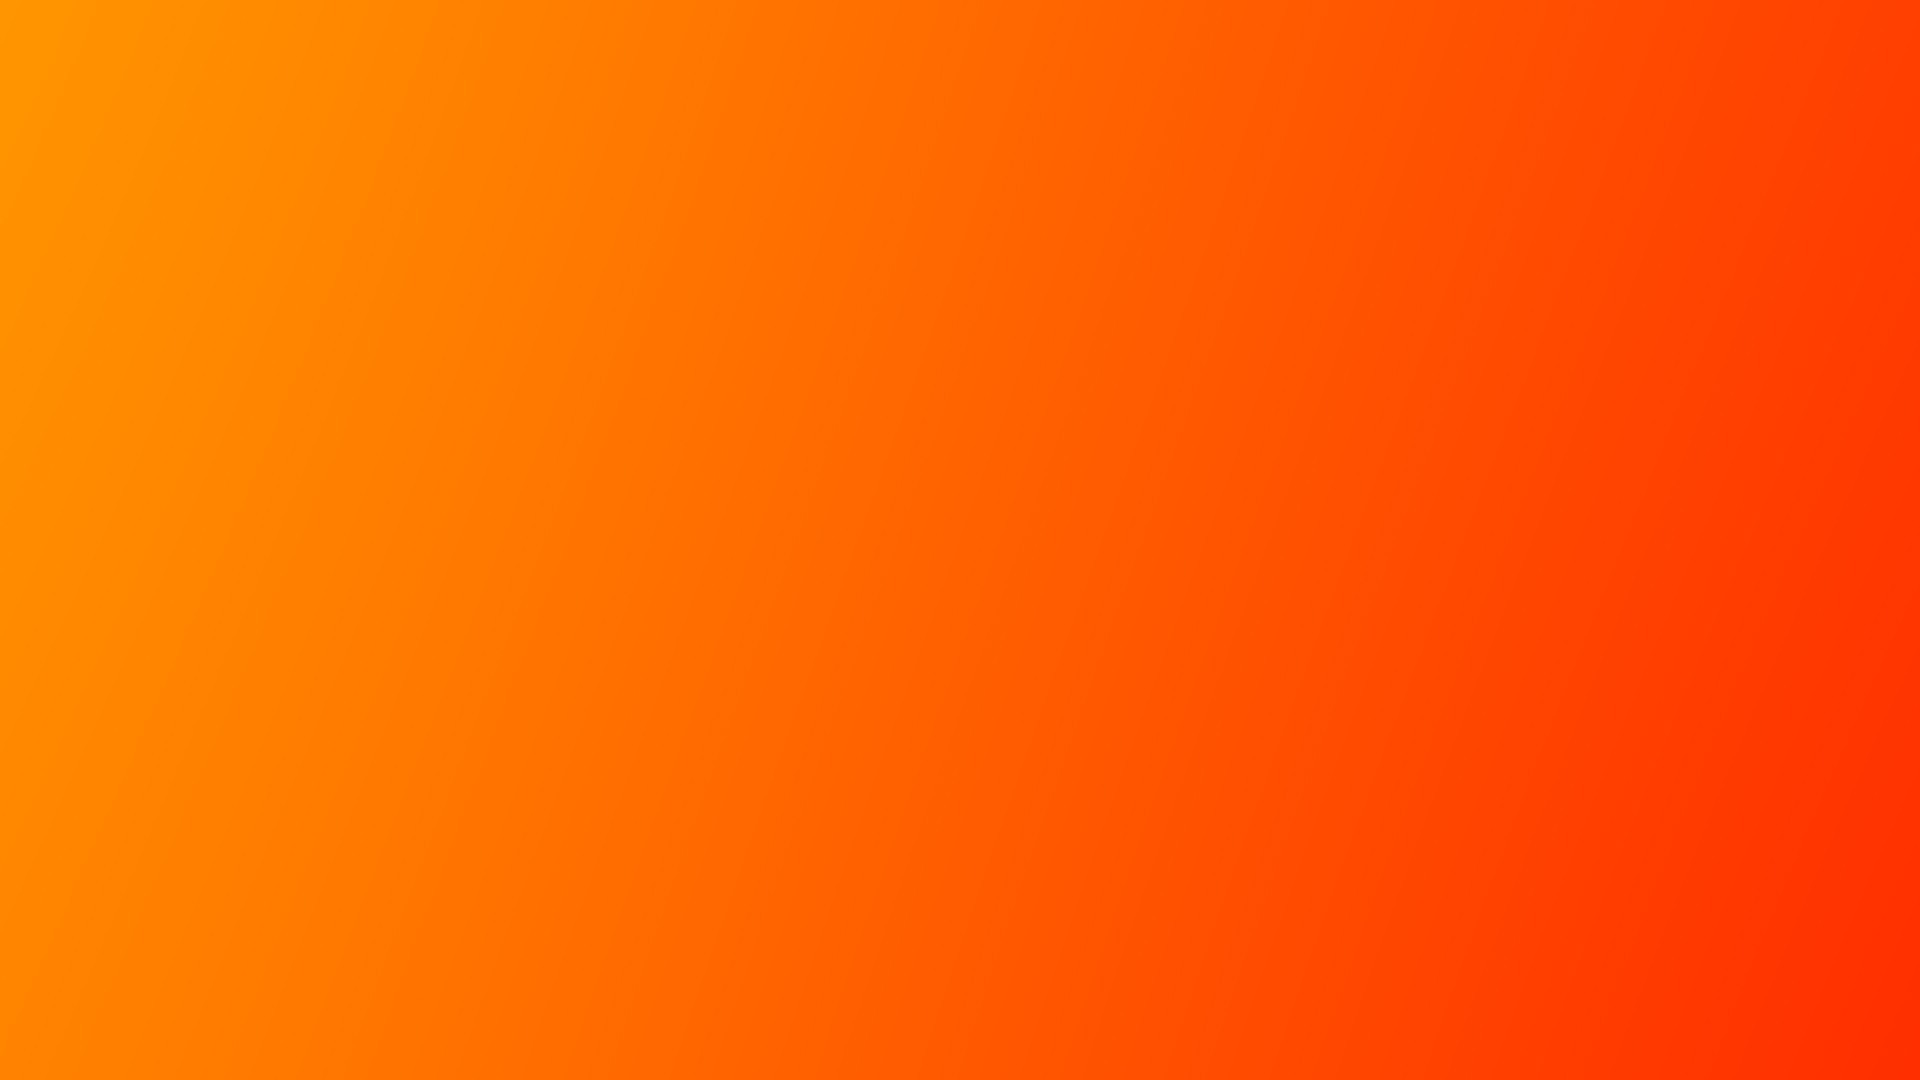 Tận dụng sức mạnh của pha trộn màu cam để tạo ra thiết kế hình nền pha màu cam độc đáo cho màn hình của bạn. Màu cam sẽ mang lại cảm hứng, sự sáng tạo và tính năng đồng bộ, giúp bạn tăng cường khả năng trình bày và sáng tạo của mình.